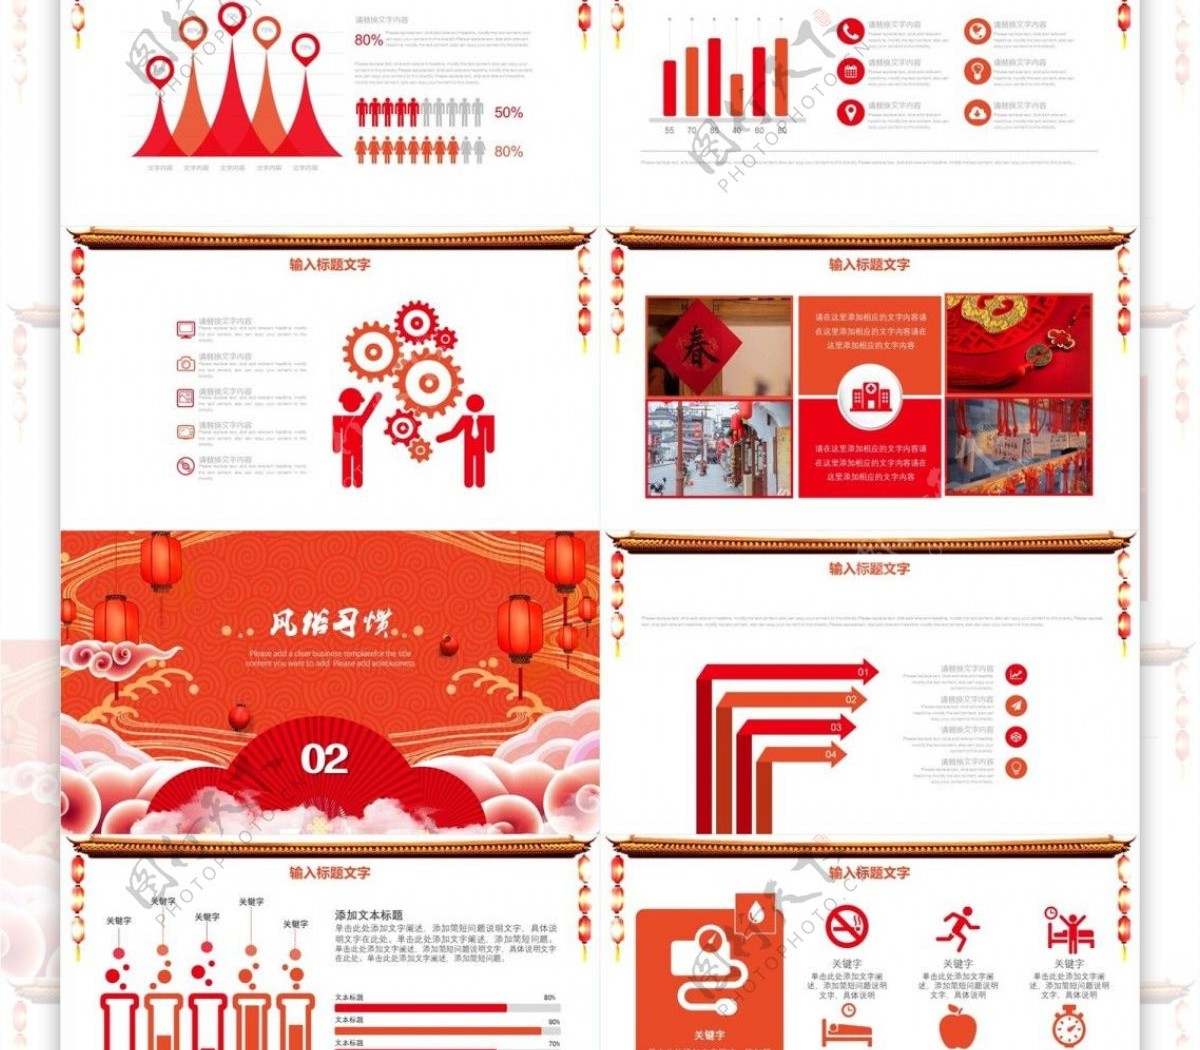 创意家具企业欢度春节节日庆典PPT模板